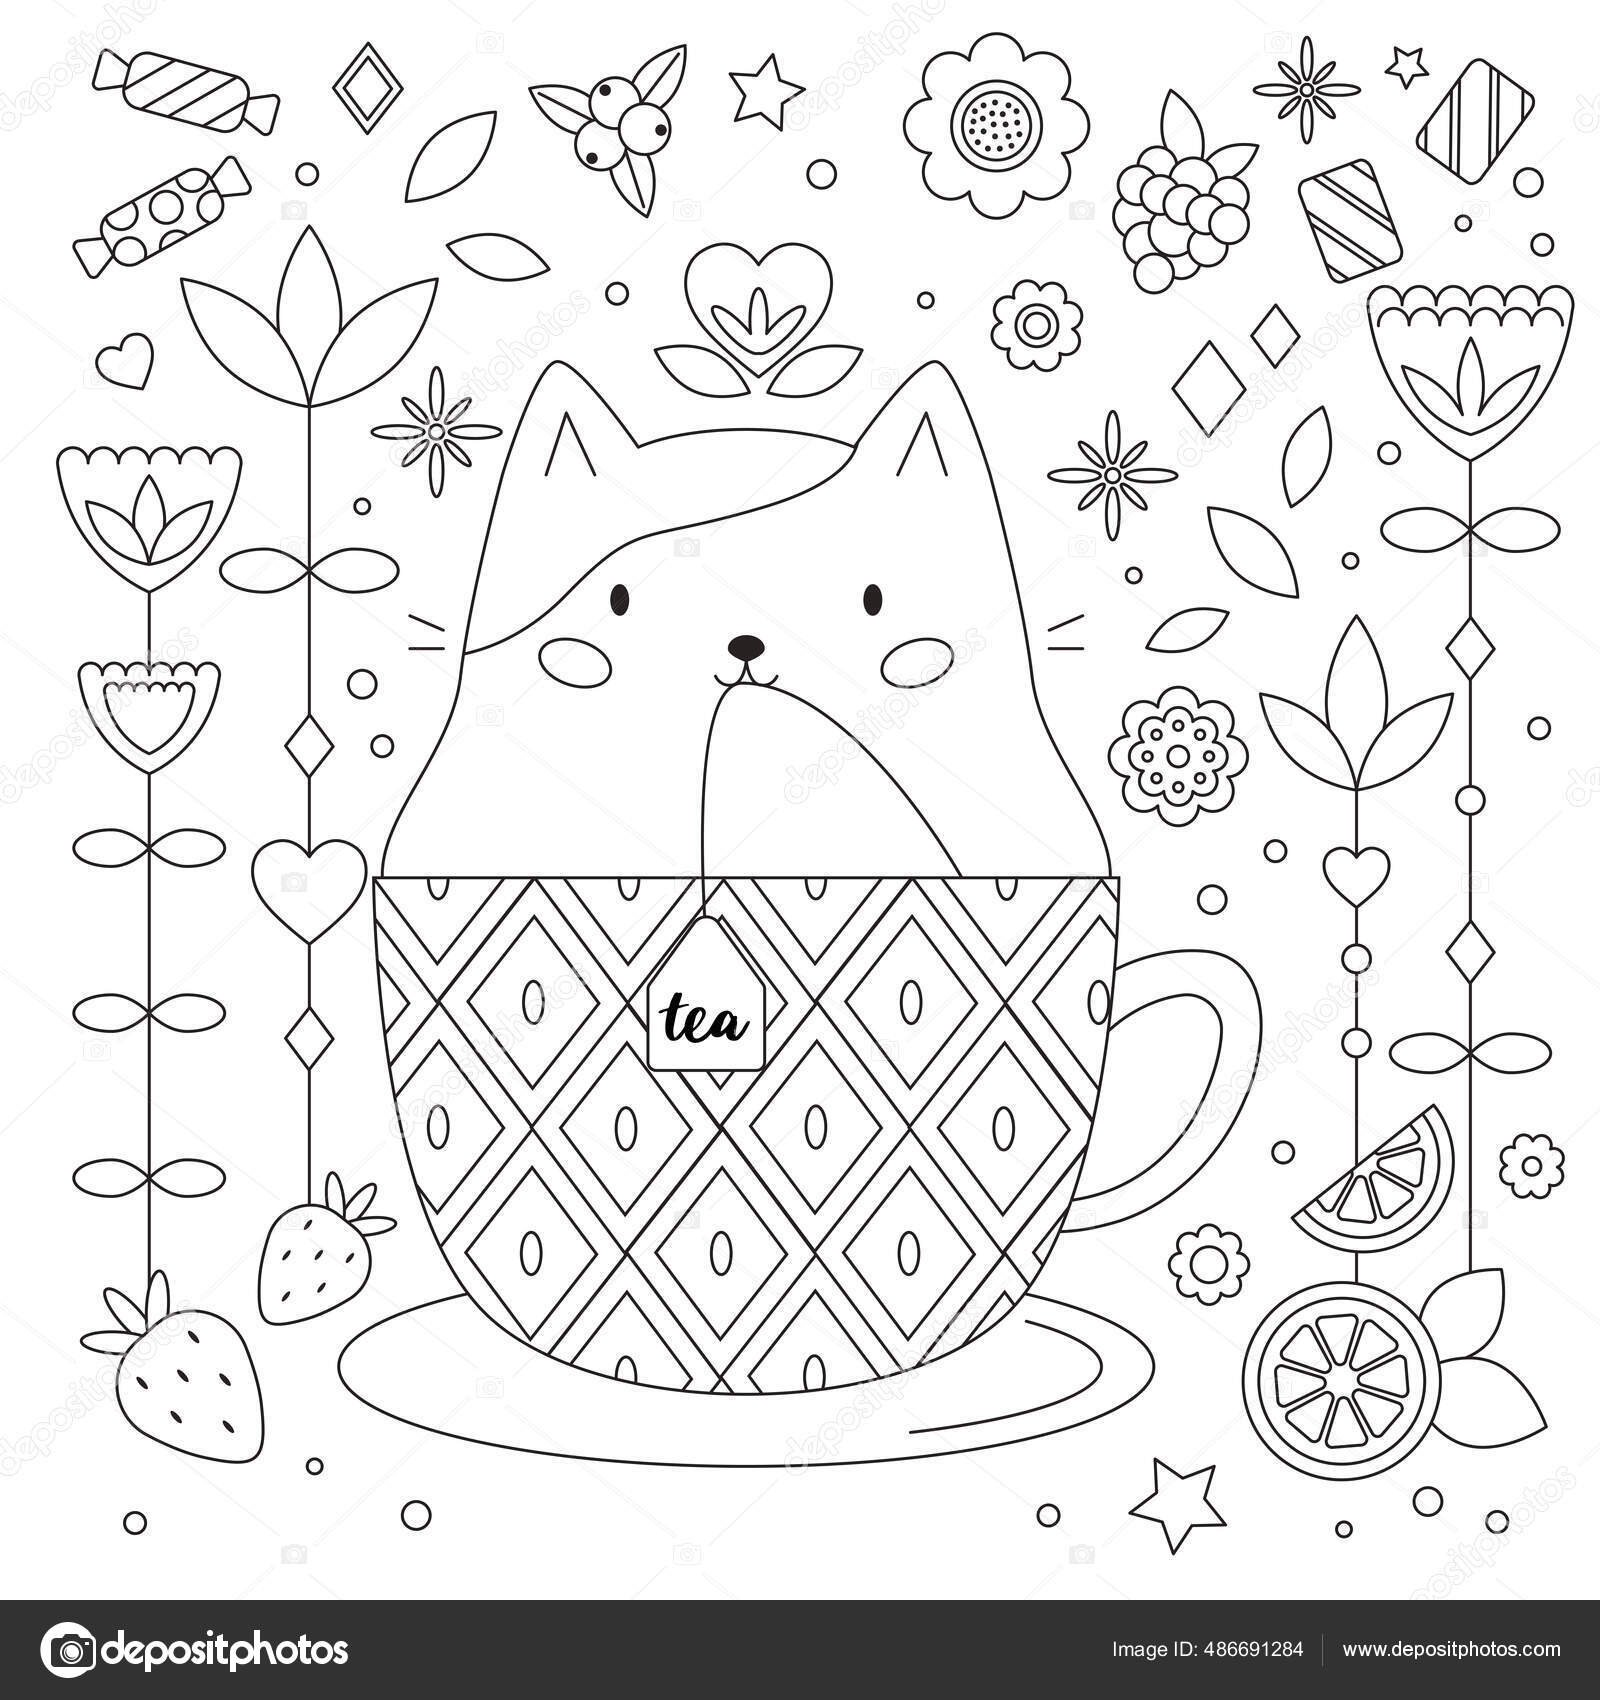 Doodle antistress fãrg sida med katt kopp abstrakta blommor frukter vektor av kristina